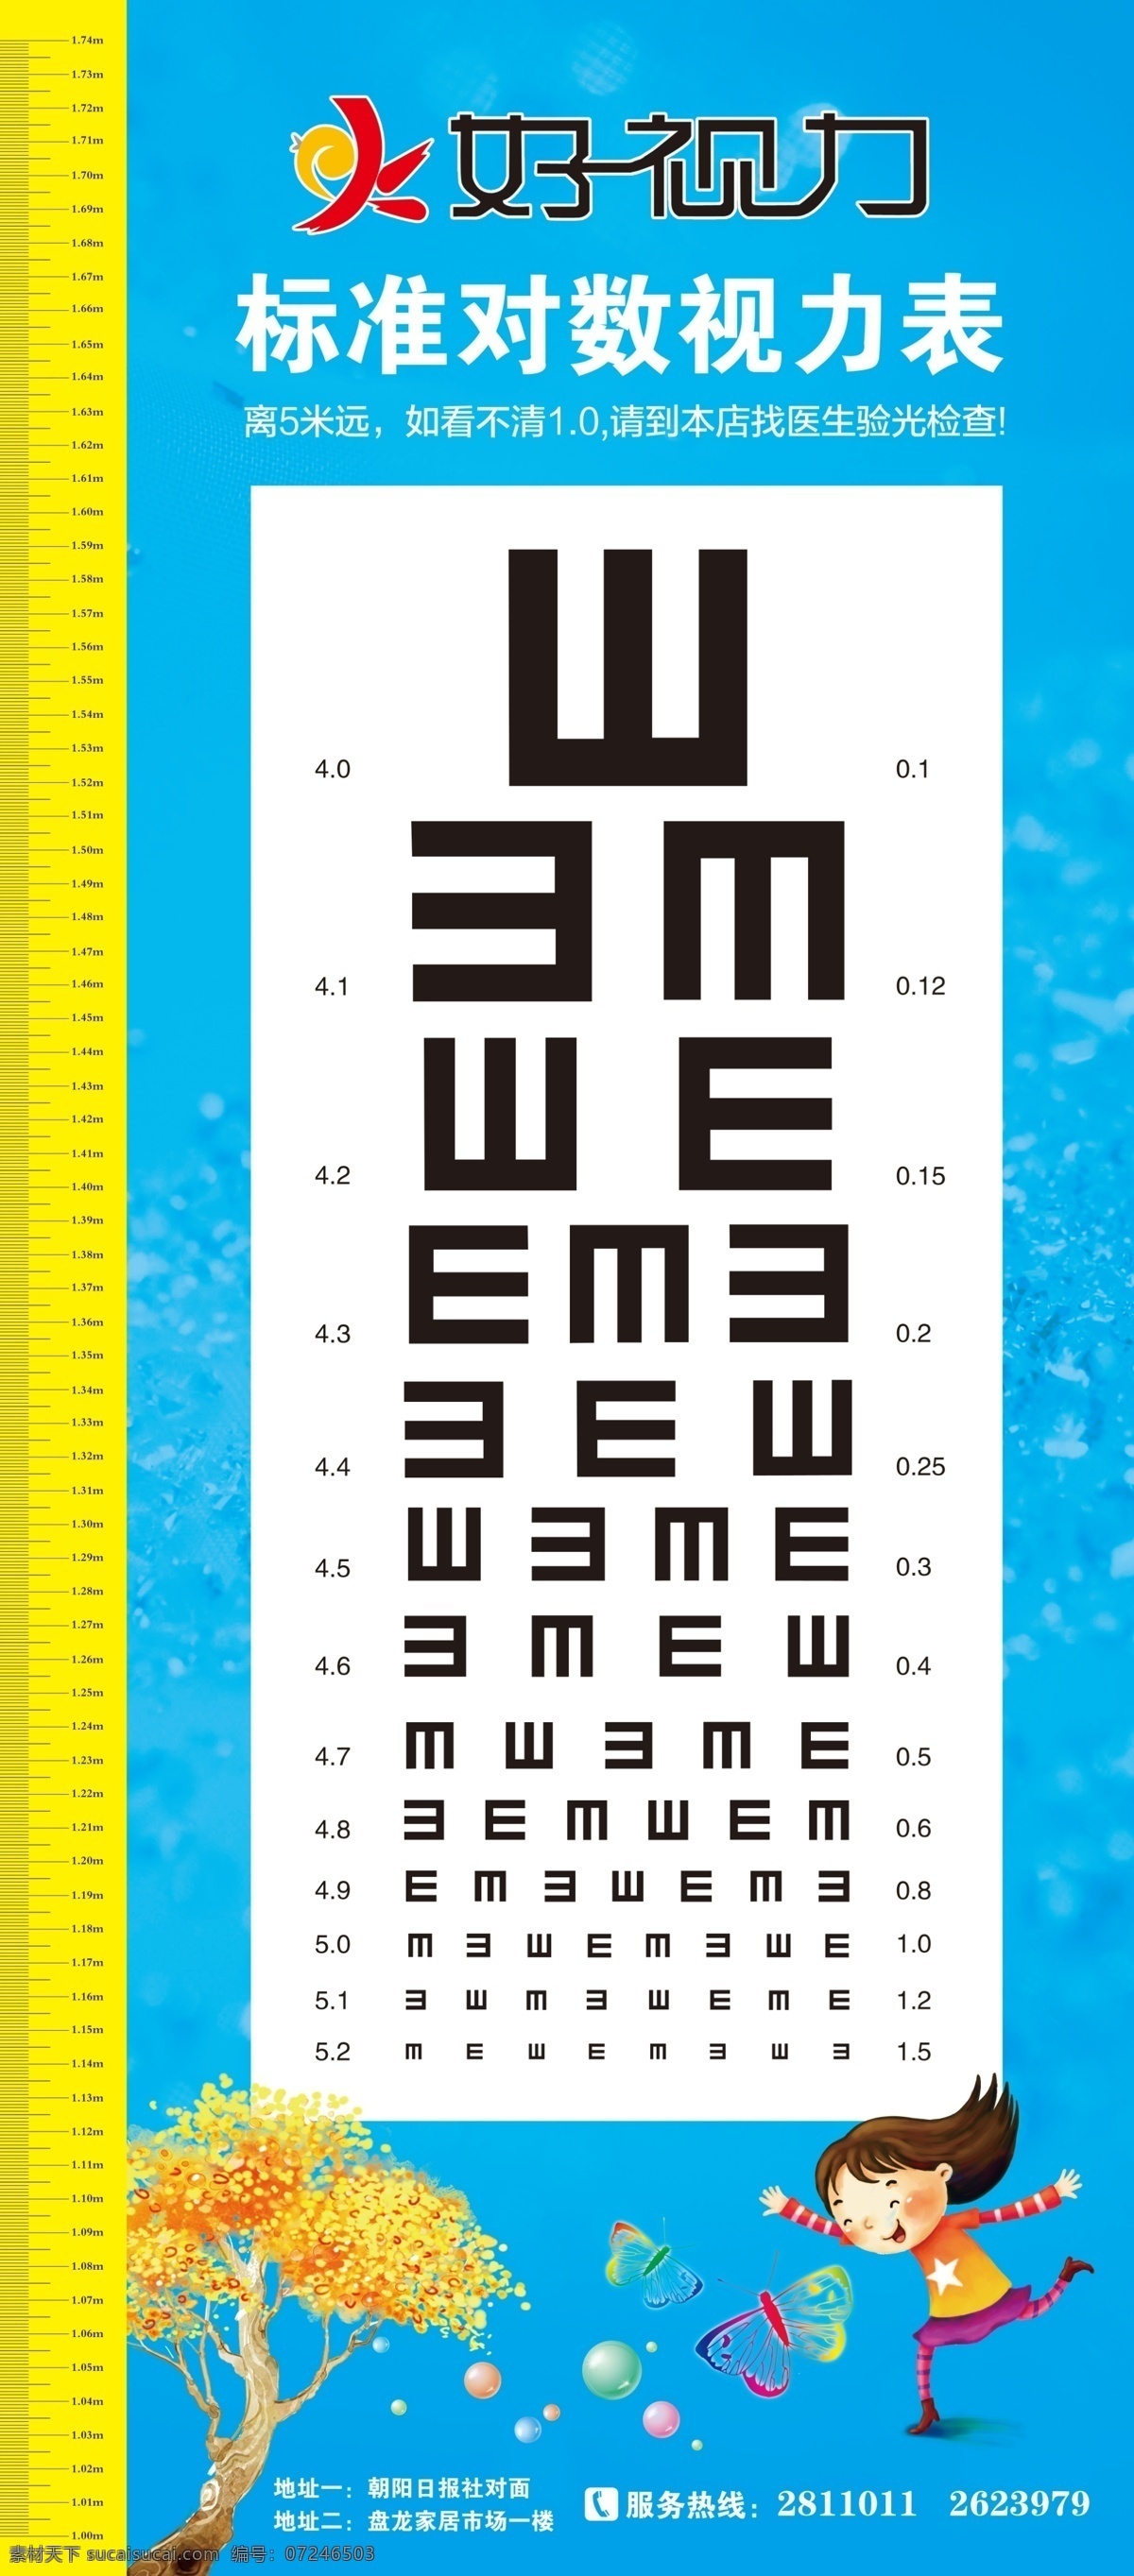 测视力海报 视力表 身高表 儿童 蝴蝶 树木 护眼 测视力 展板模板 广告设计模板 源文件